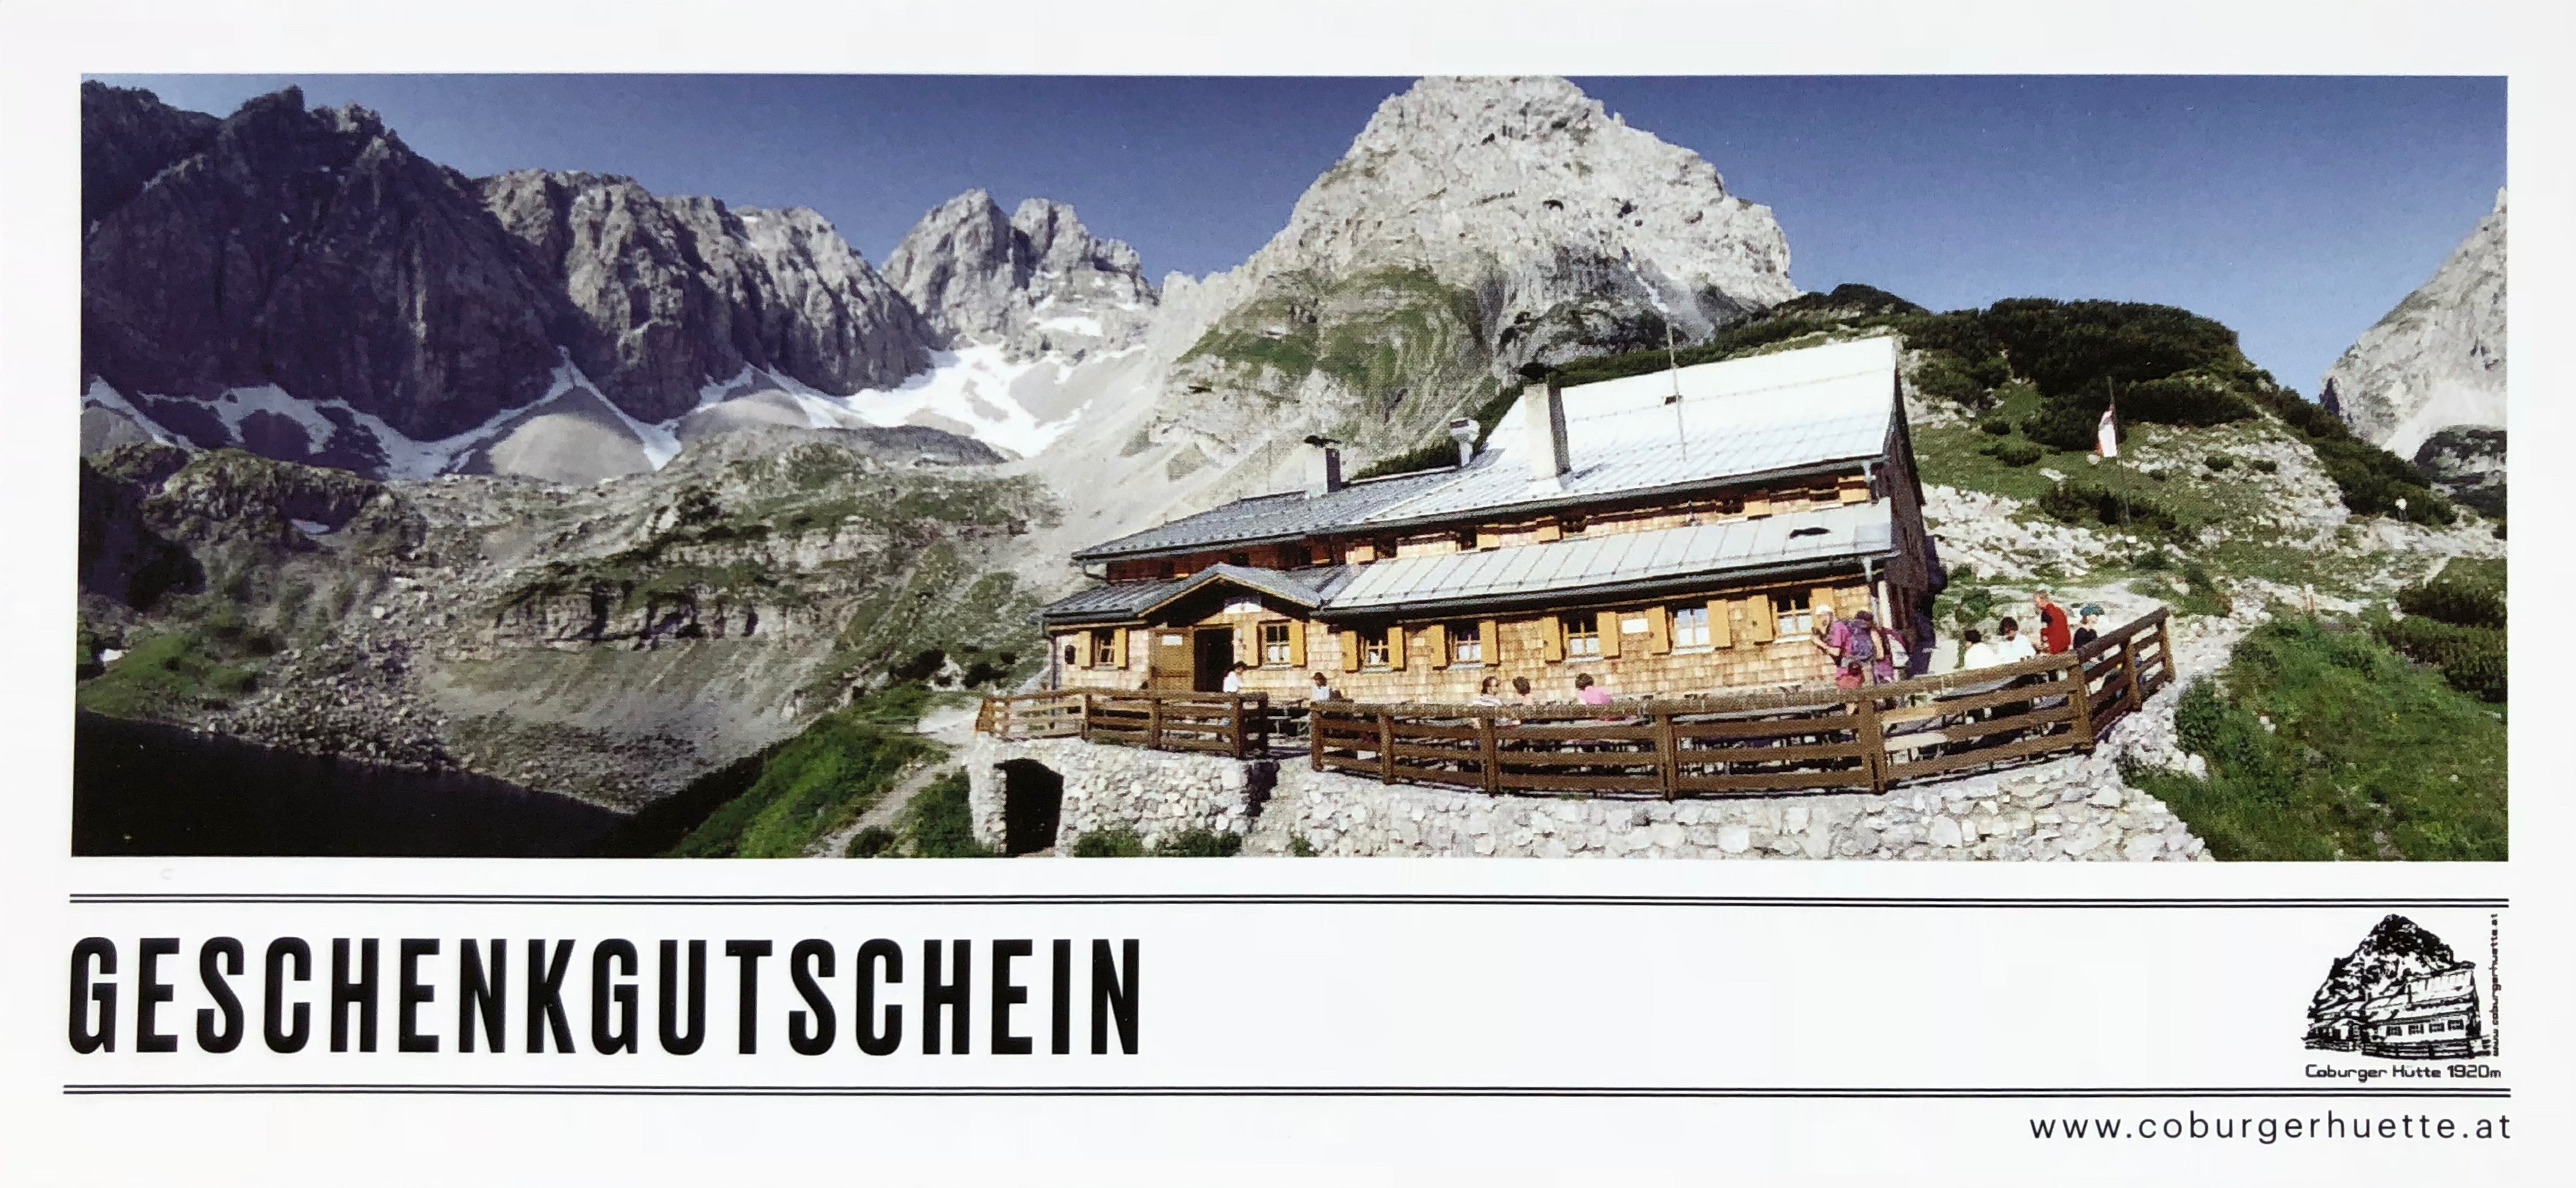 Geschenkgutschein Coburger Hütte Ehrwald Tirol